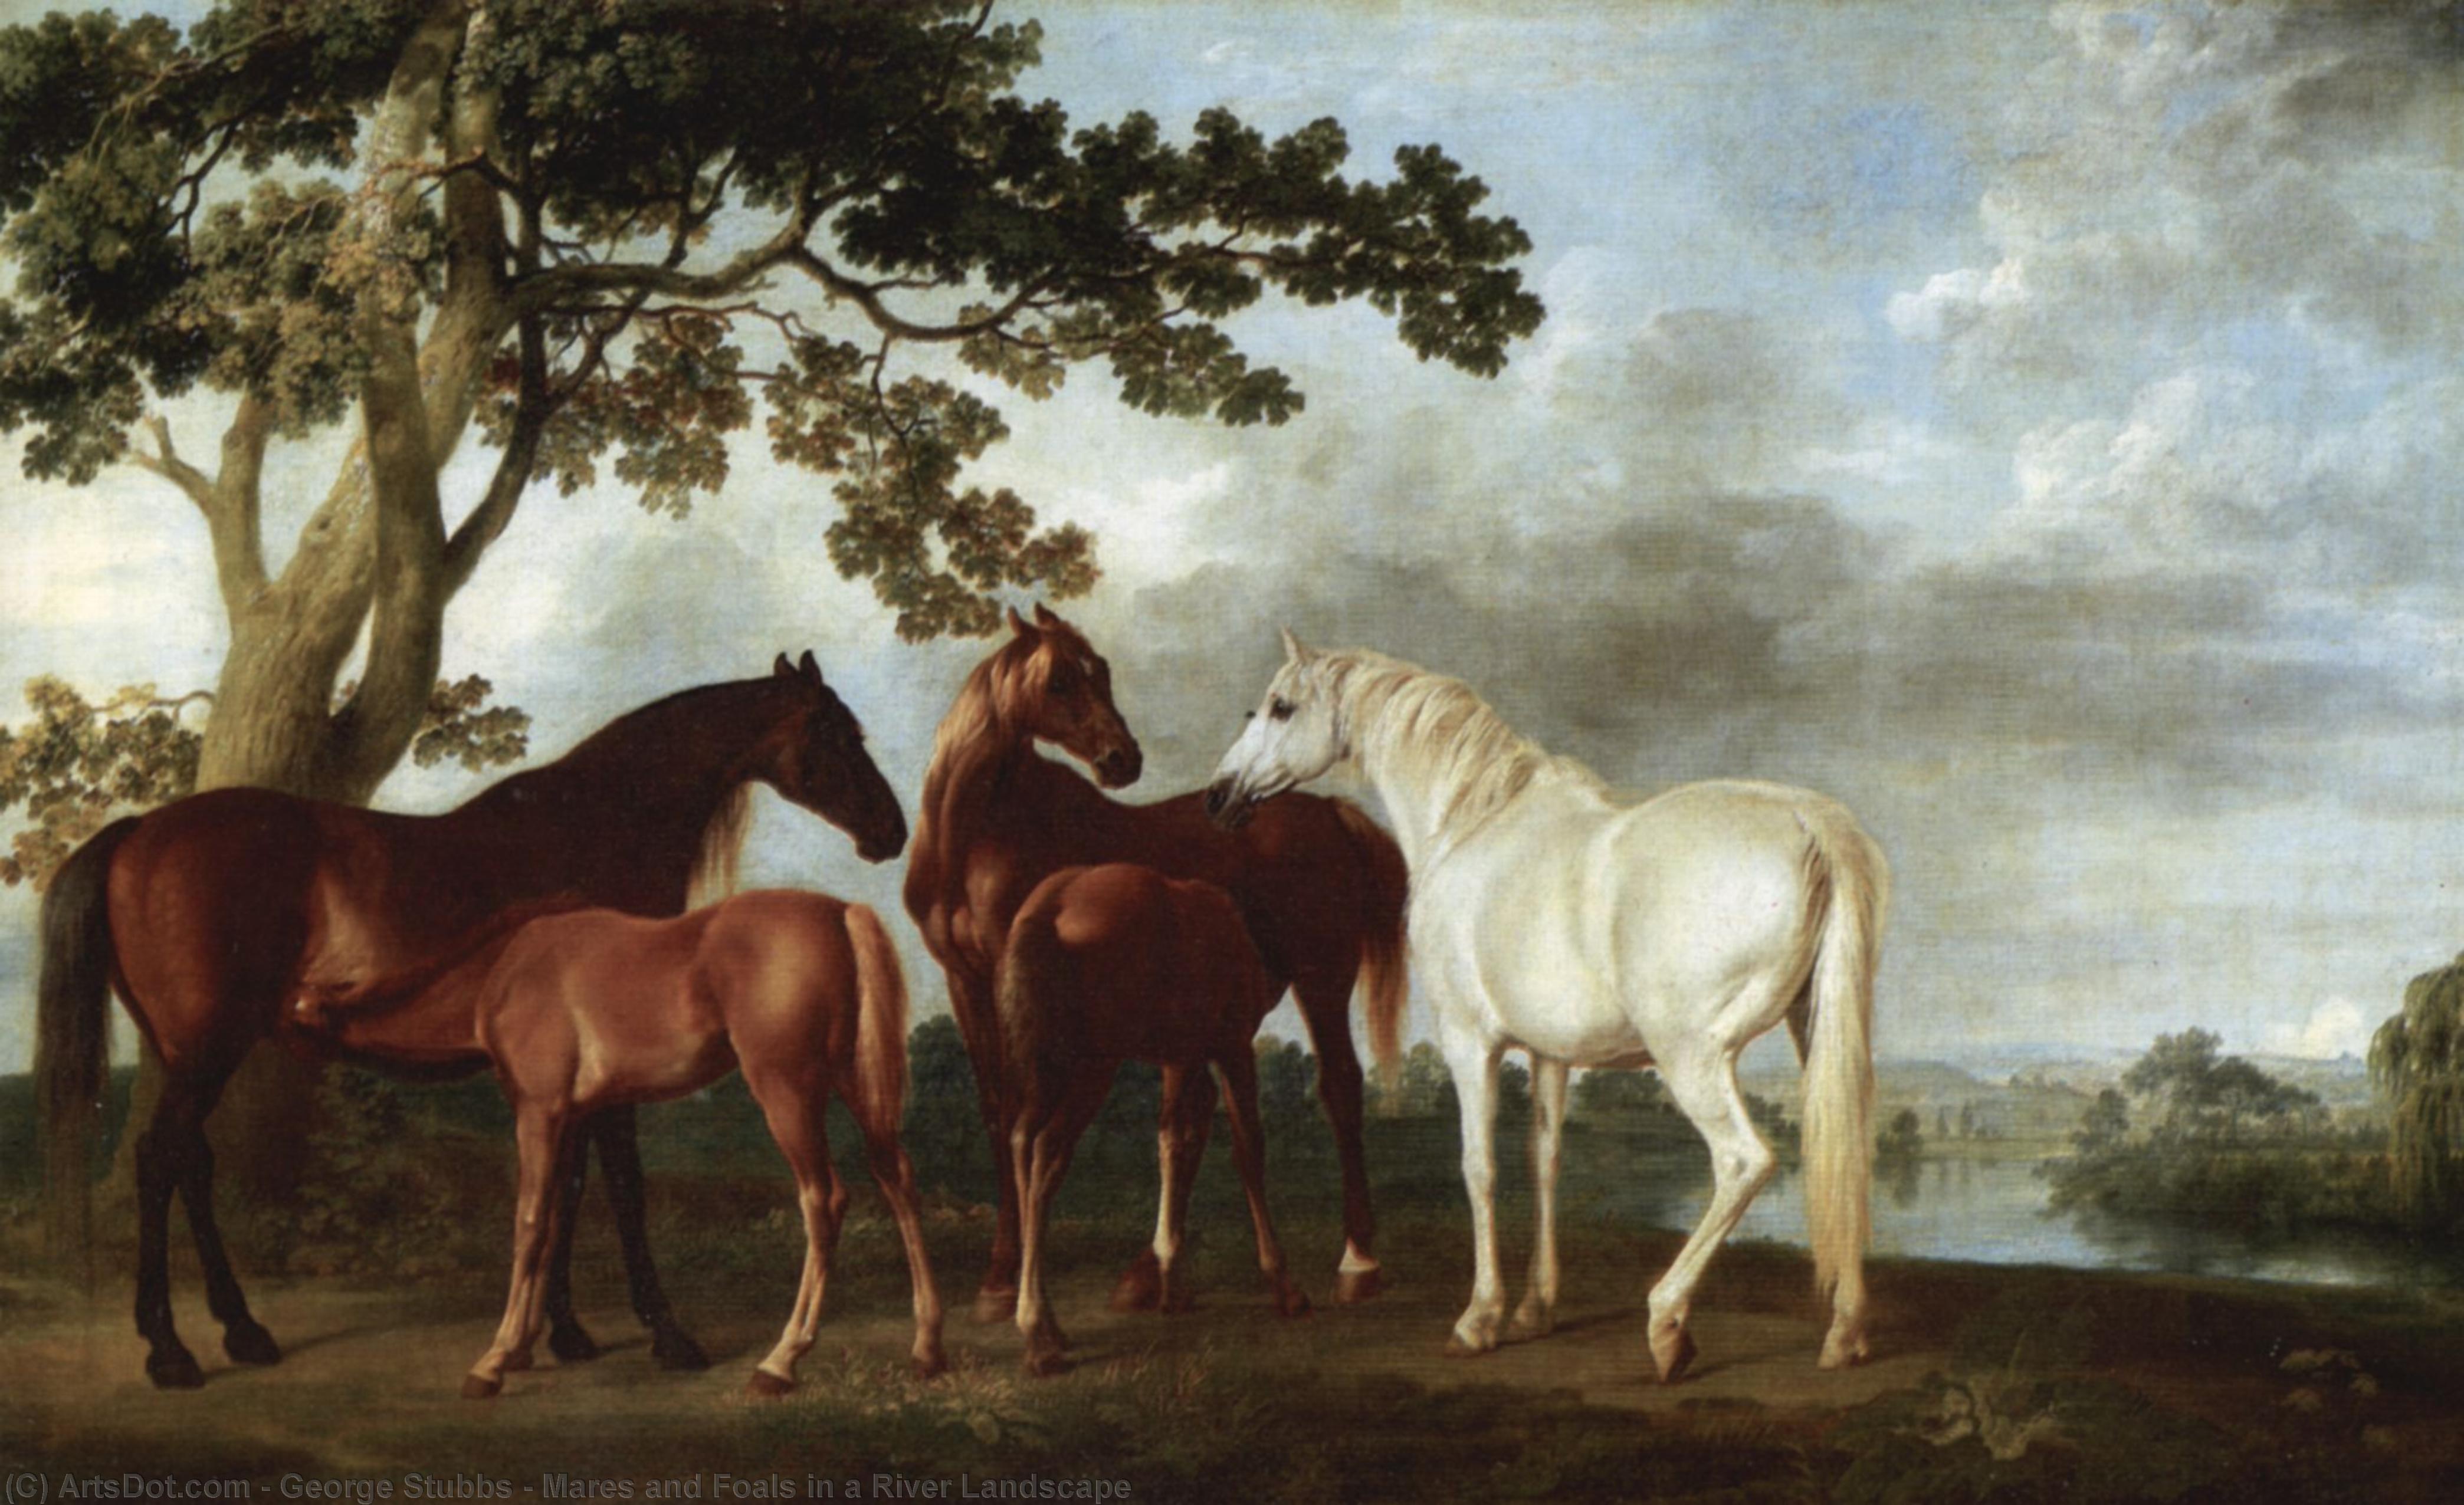 Лошади 18 века. Джордж Стаббс картины с лошадьми. Джордж Стаббс художник. Джордж Стаббс "кобылы и жеребята под большими дубом". Джордж Стаббс анимализм.